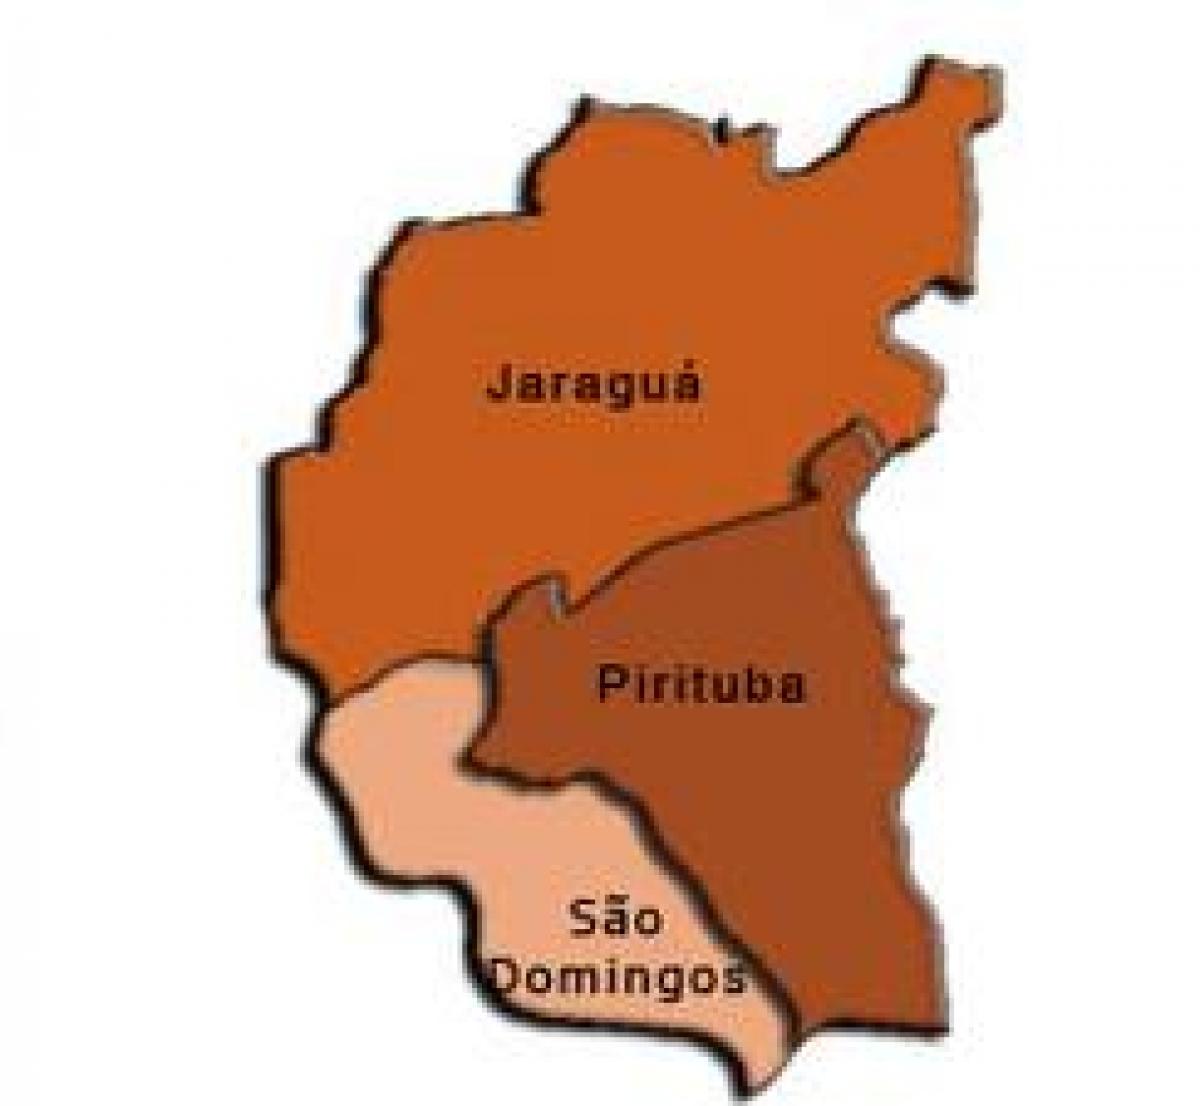 Vilayetin haritası Pirituba-Jaraguá alt